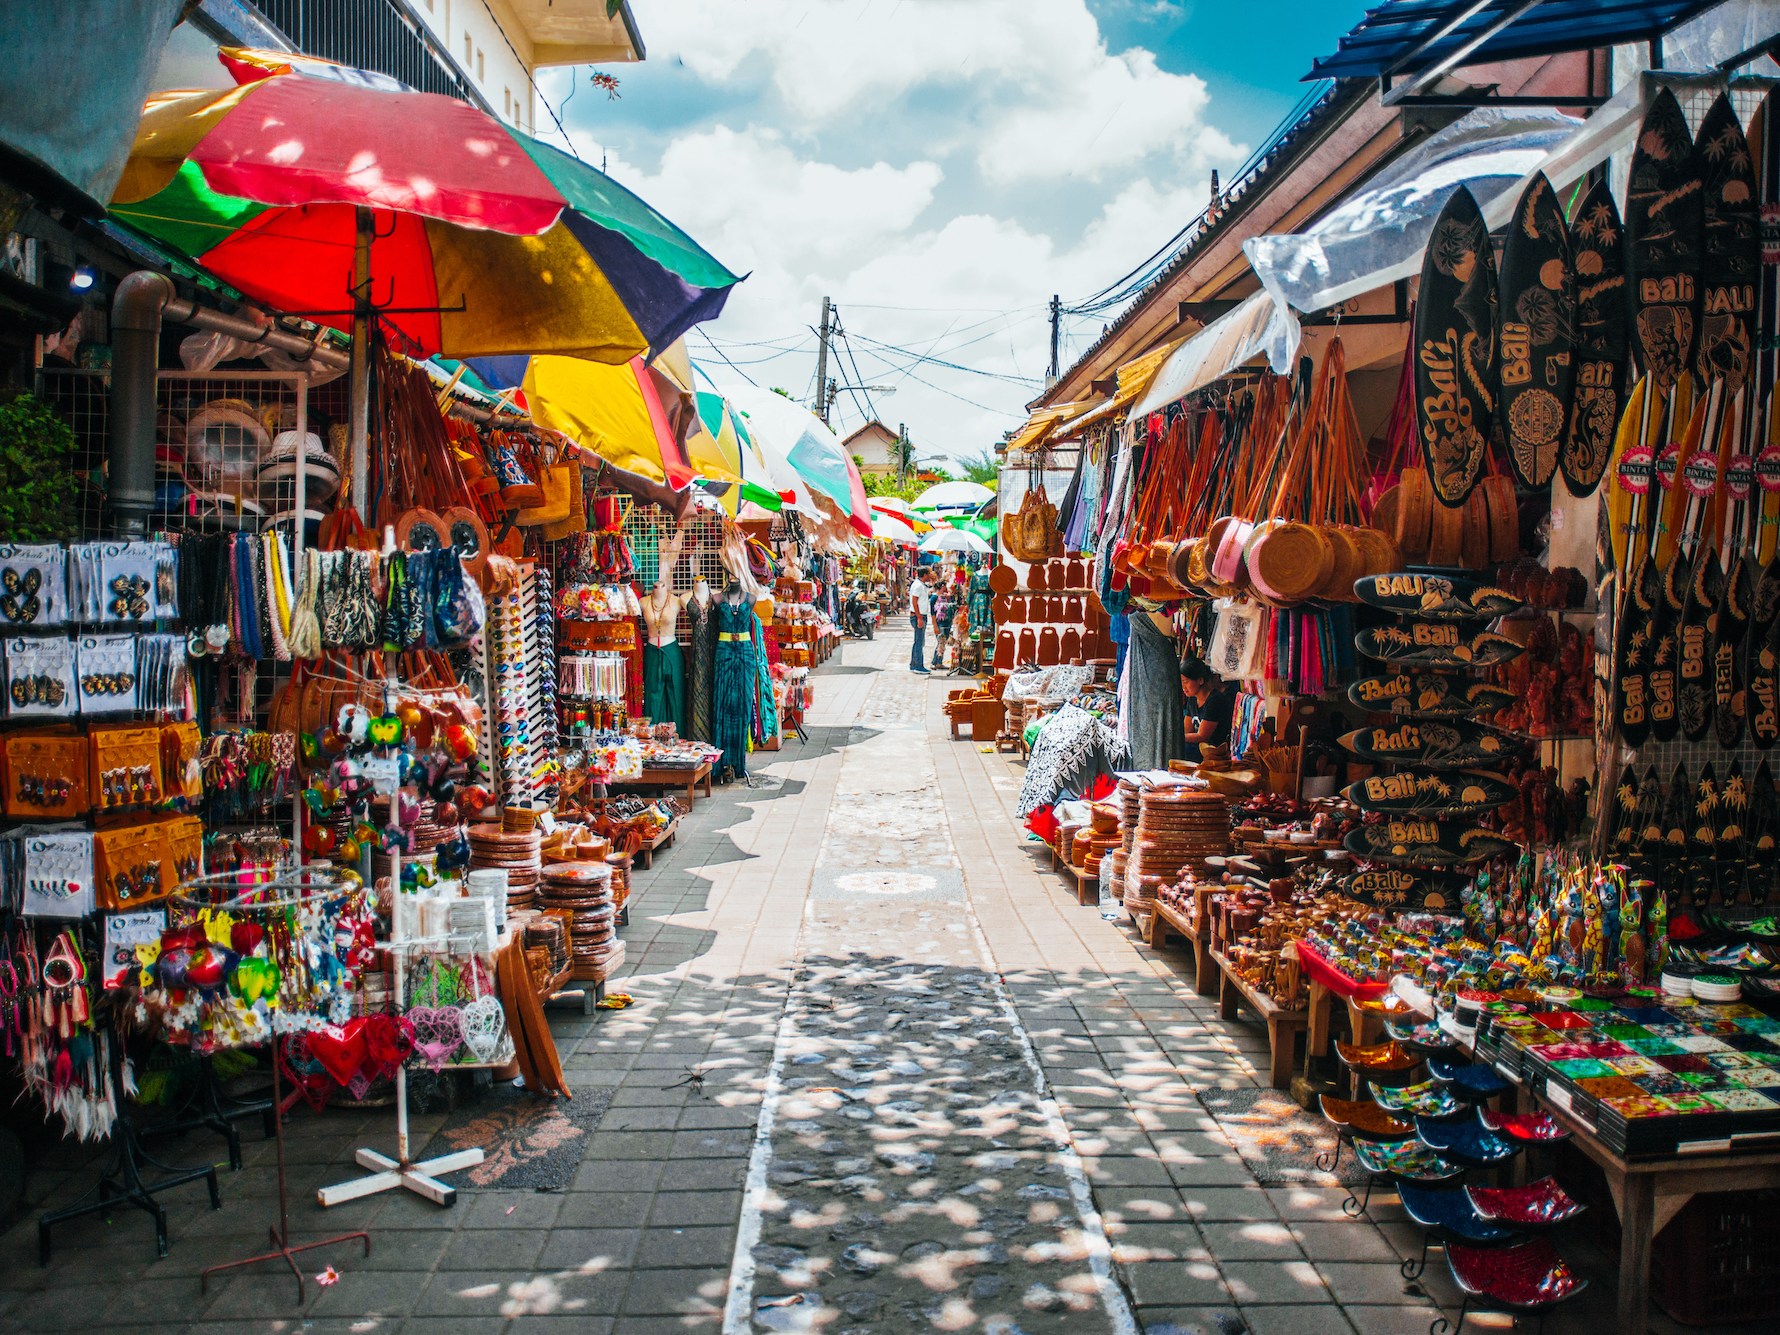 Рынки бали - фрукты, морепродукты, одежда [19 рынков] - блог о путешествиях